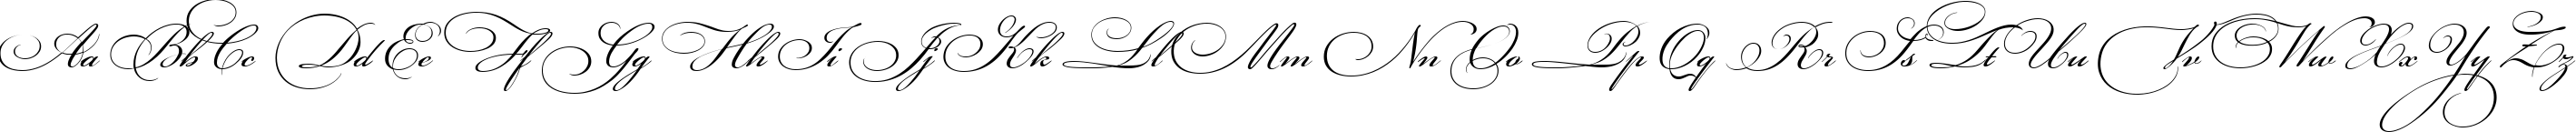 Пример написания английского алфавита шрифтом Bickham Script Three